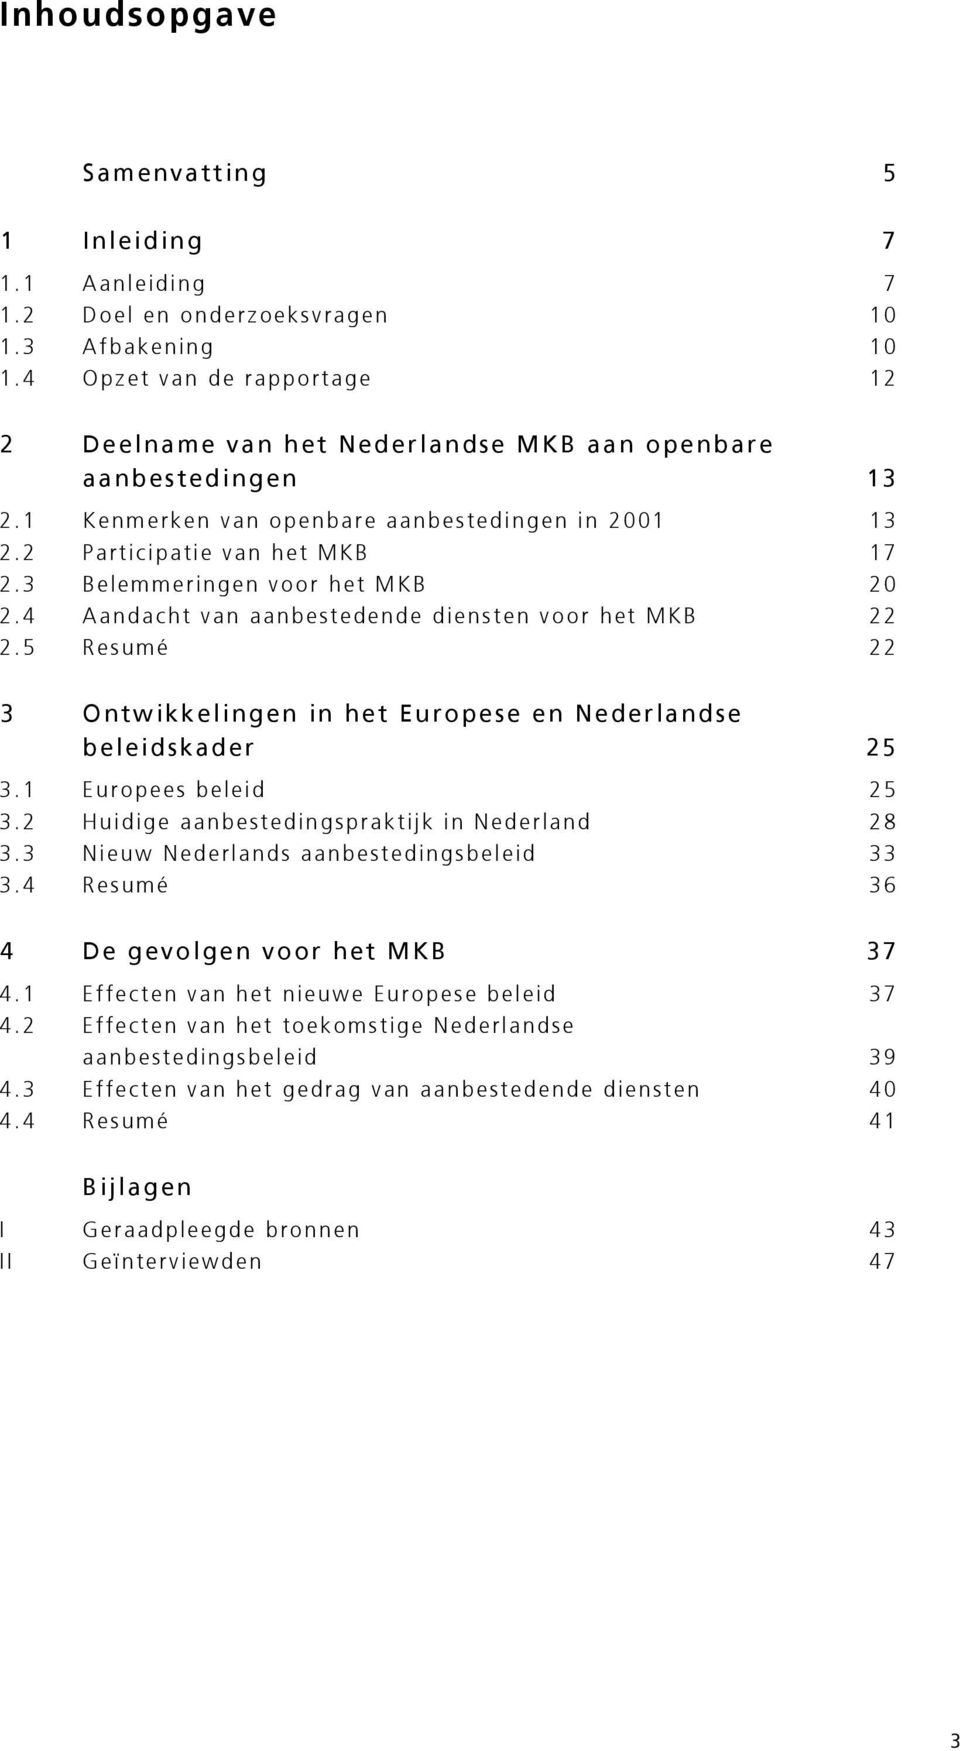 3 Belemmeringen voor het MKB 20 2.4 Aandacht van aanbestedende diensten voor het MKB 22 2.5 Resumé 22 3 Ontwikkelingen in het Europese en Nederlandse beleidskader 25 3.1 Europees beleid 25 3.